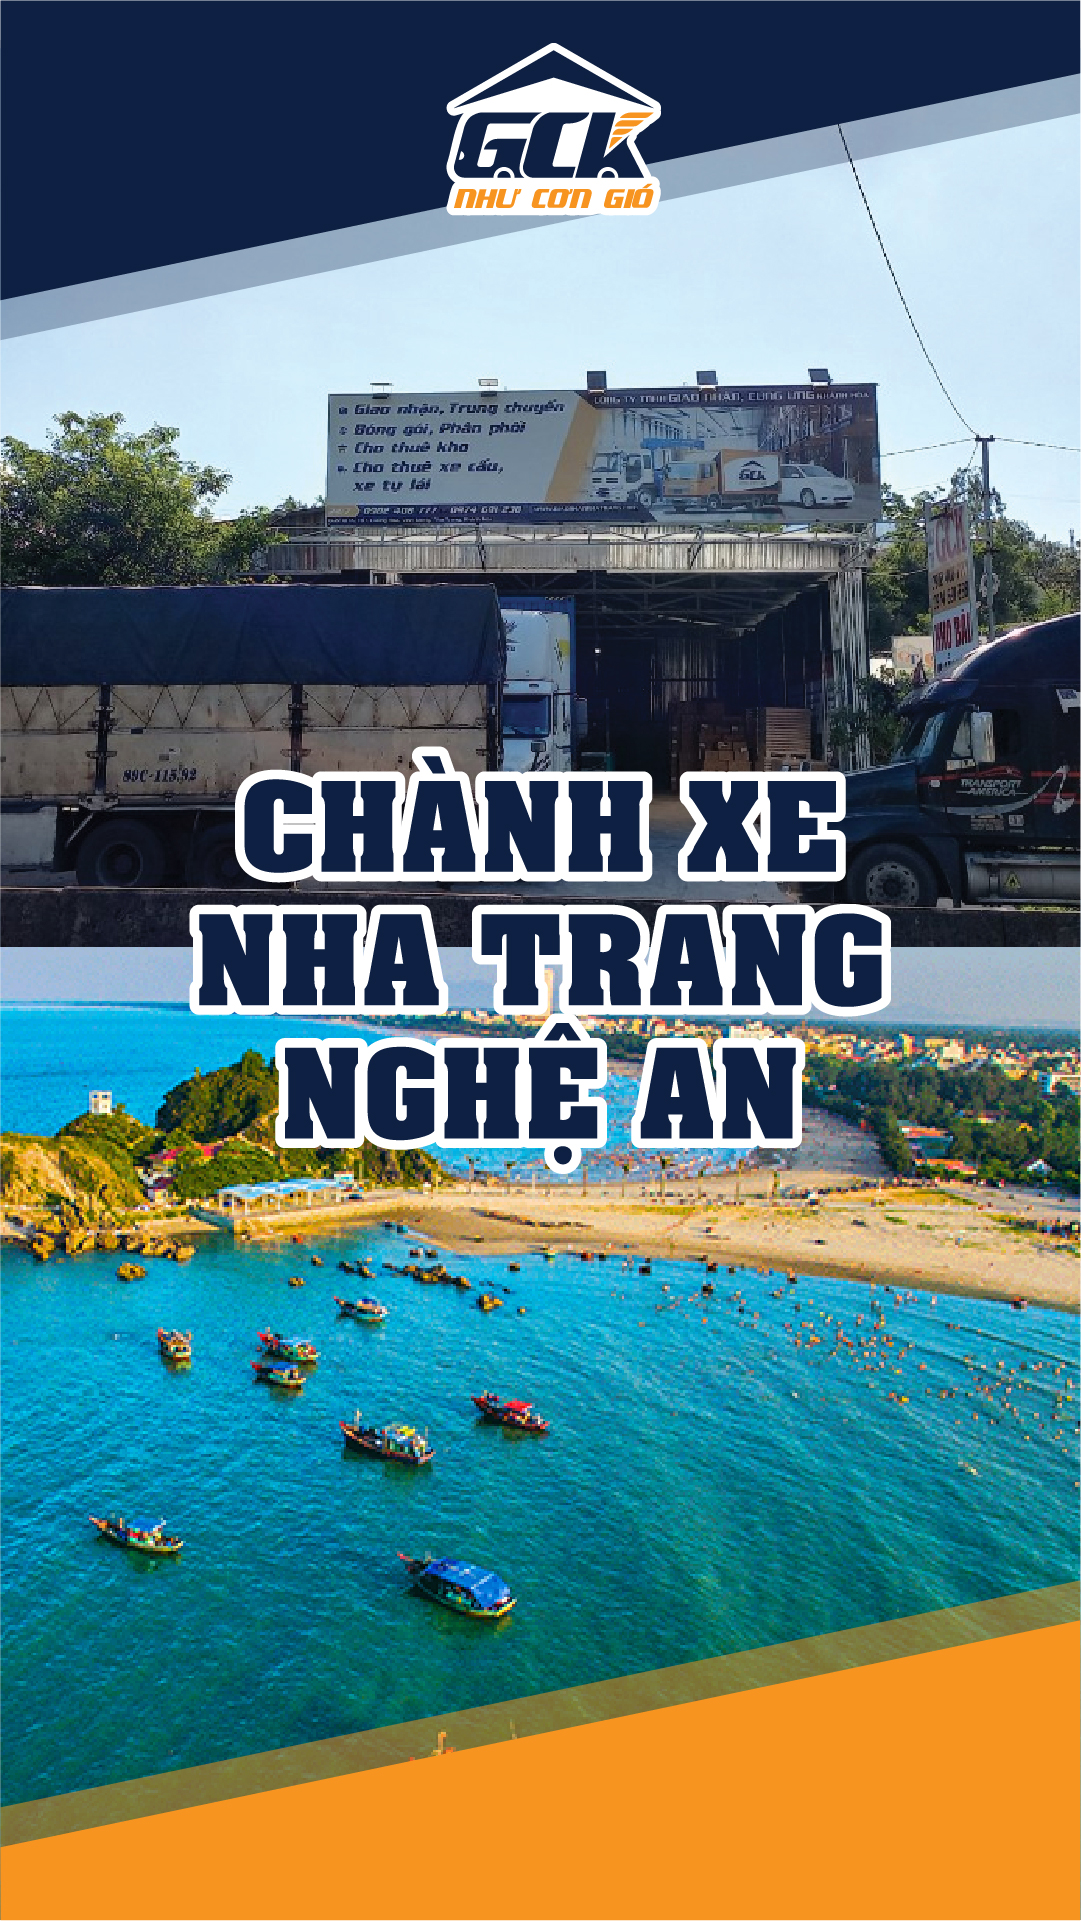 Chành xe Nha Trang Nghệ An